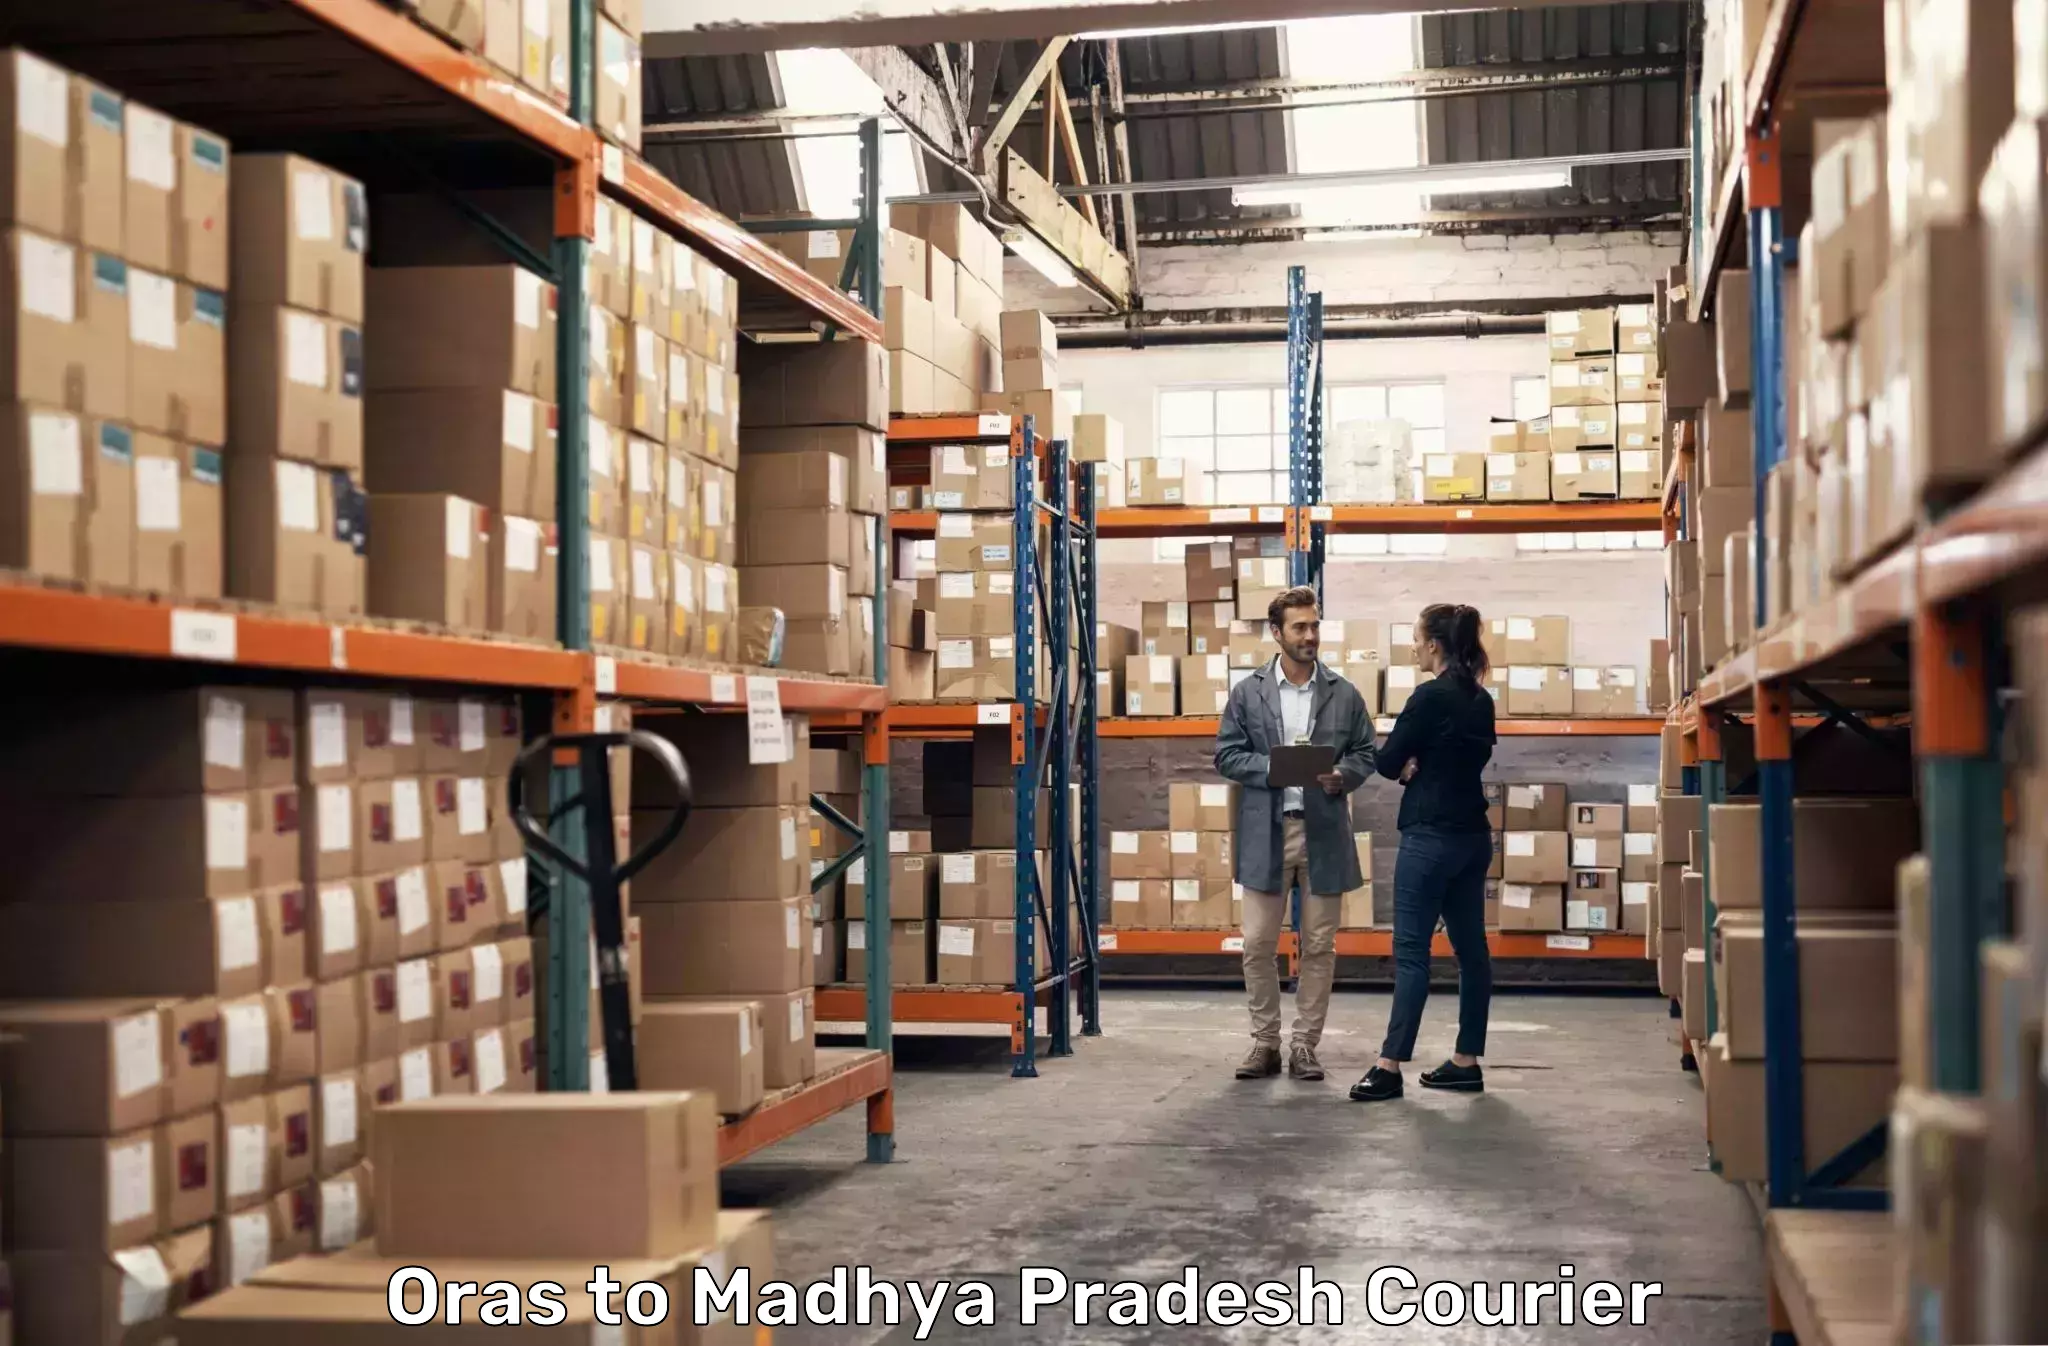 High-priority parcel service Oras to West Nimar